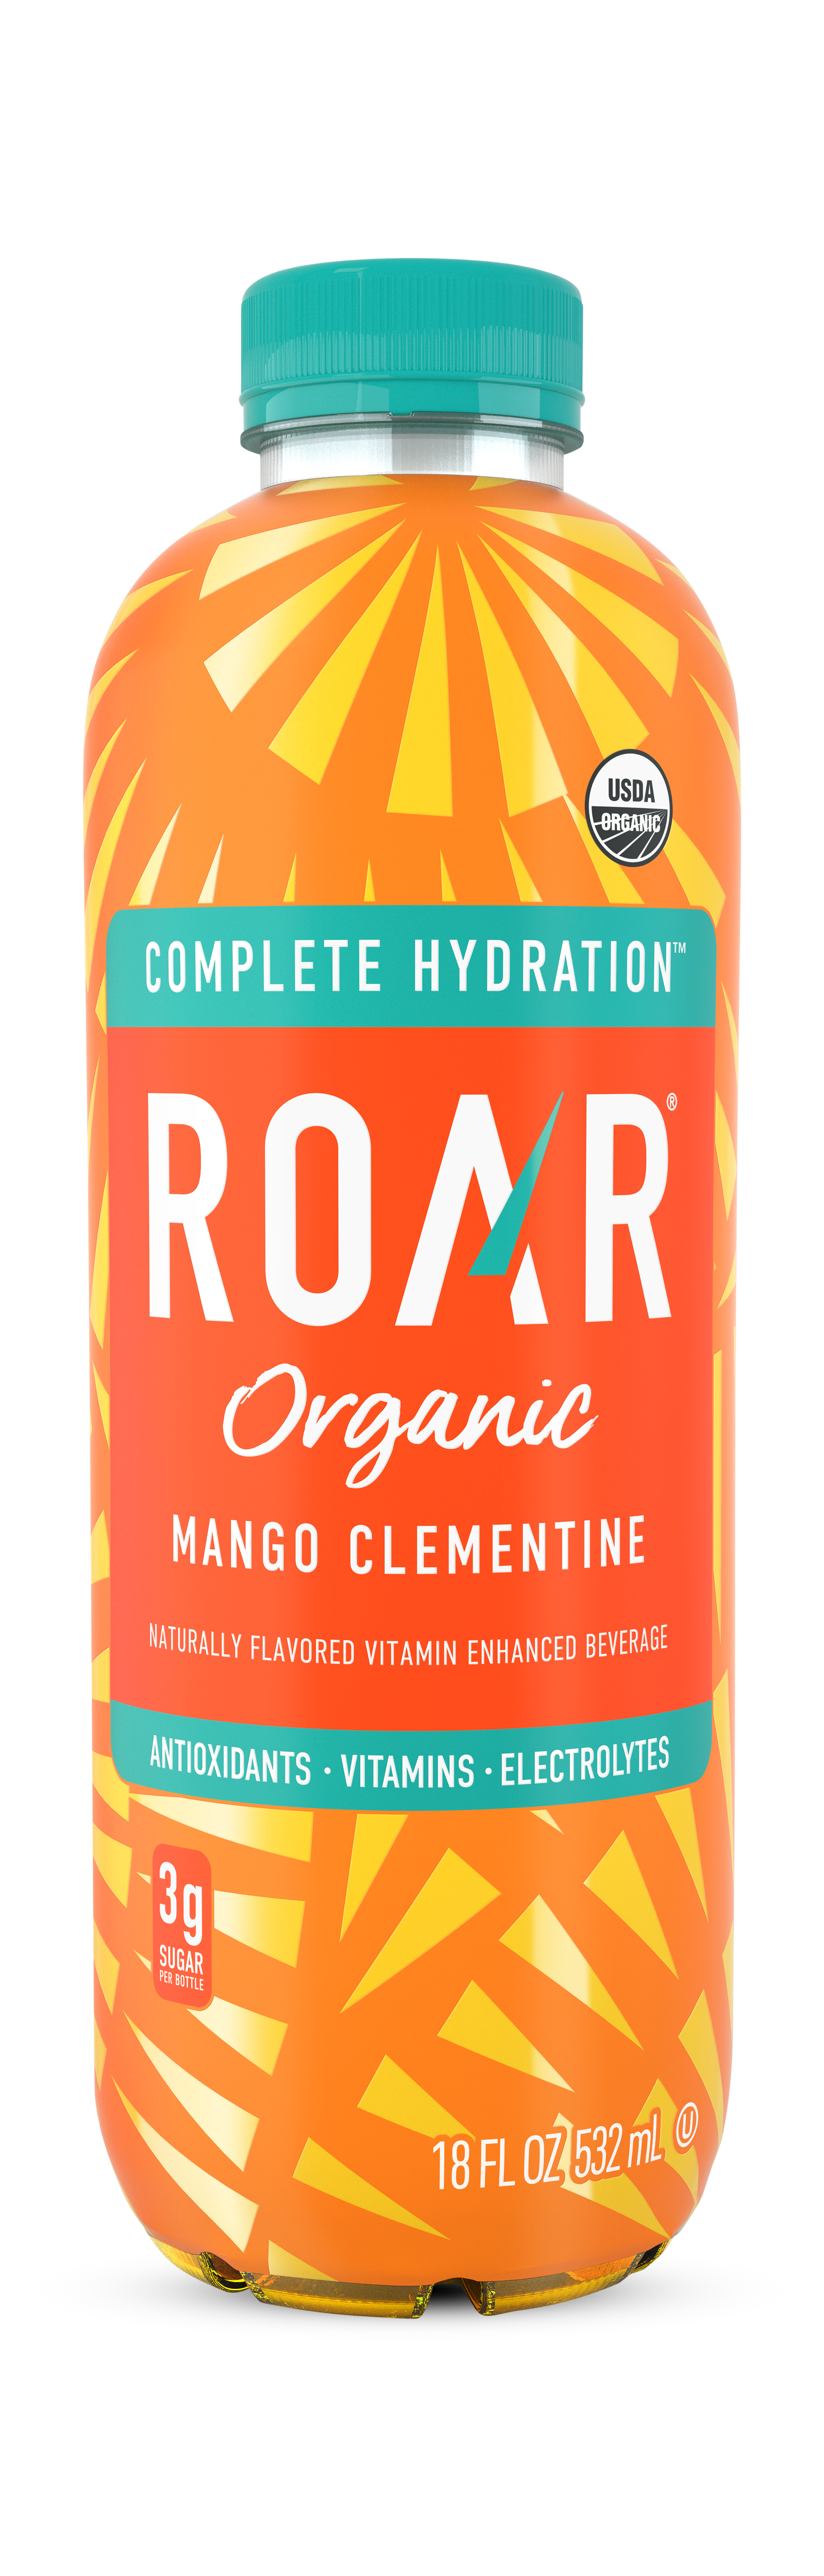 Roar Organic Mango Clementine 1 units per case 18.0 oz